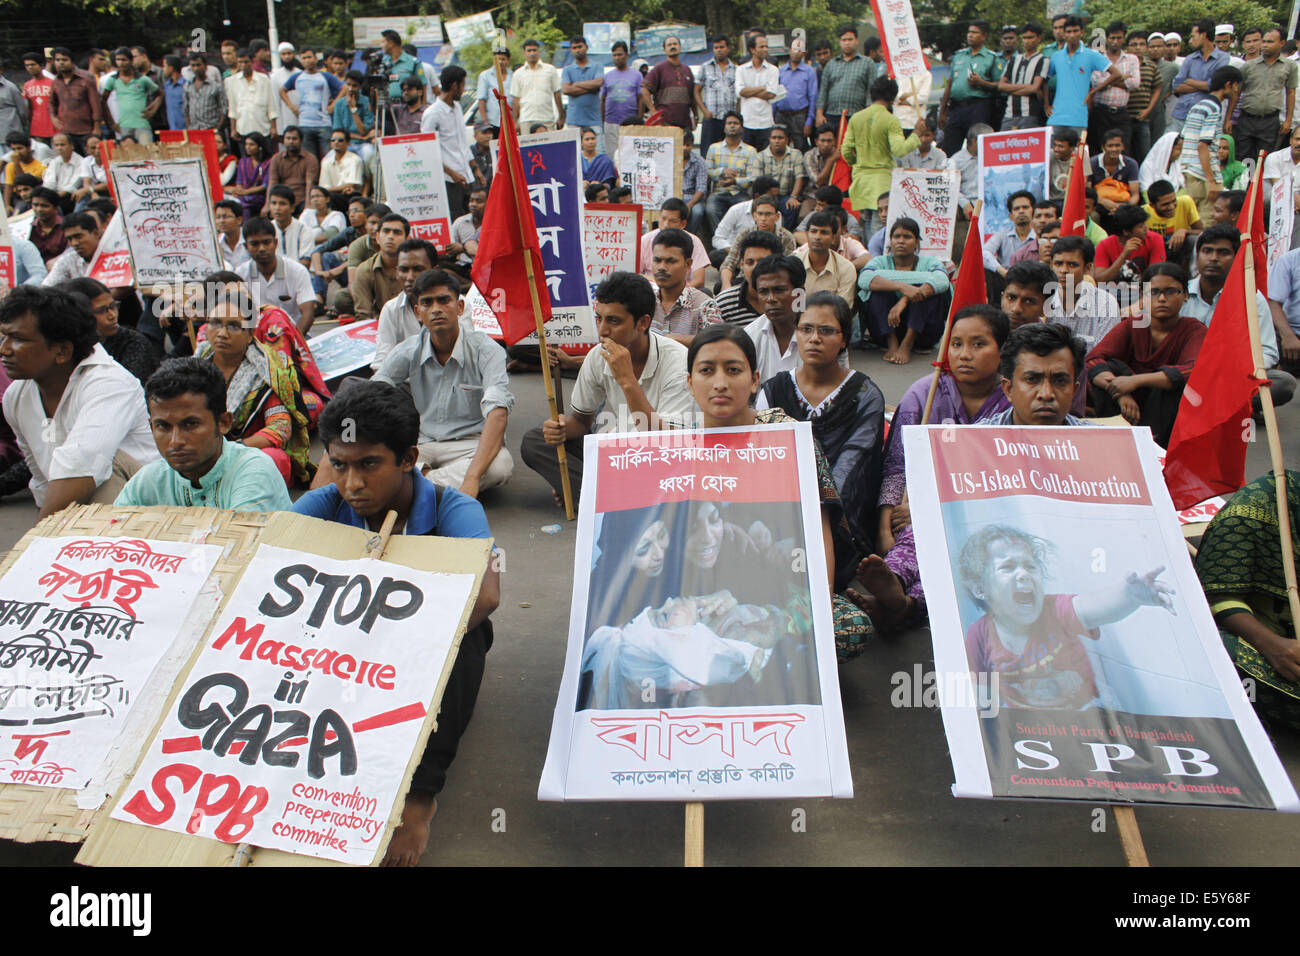 Dhaka, Bangladesch. 8. August 2014. Linksbündnis politischen Parteien protestieren des israelischen Angriffs auf Gaza von einer Kundgebung vor der Nation Stadtmuseum, Dhaka-Credit: Zakir Hossain Chowdhury/ZUMA Draht/Alamy Live News Stockfoto